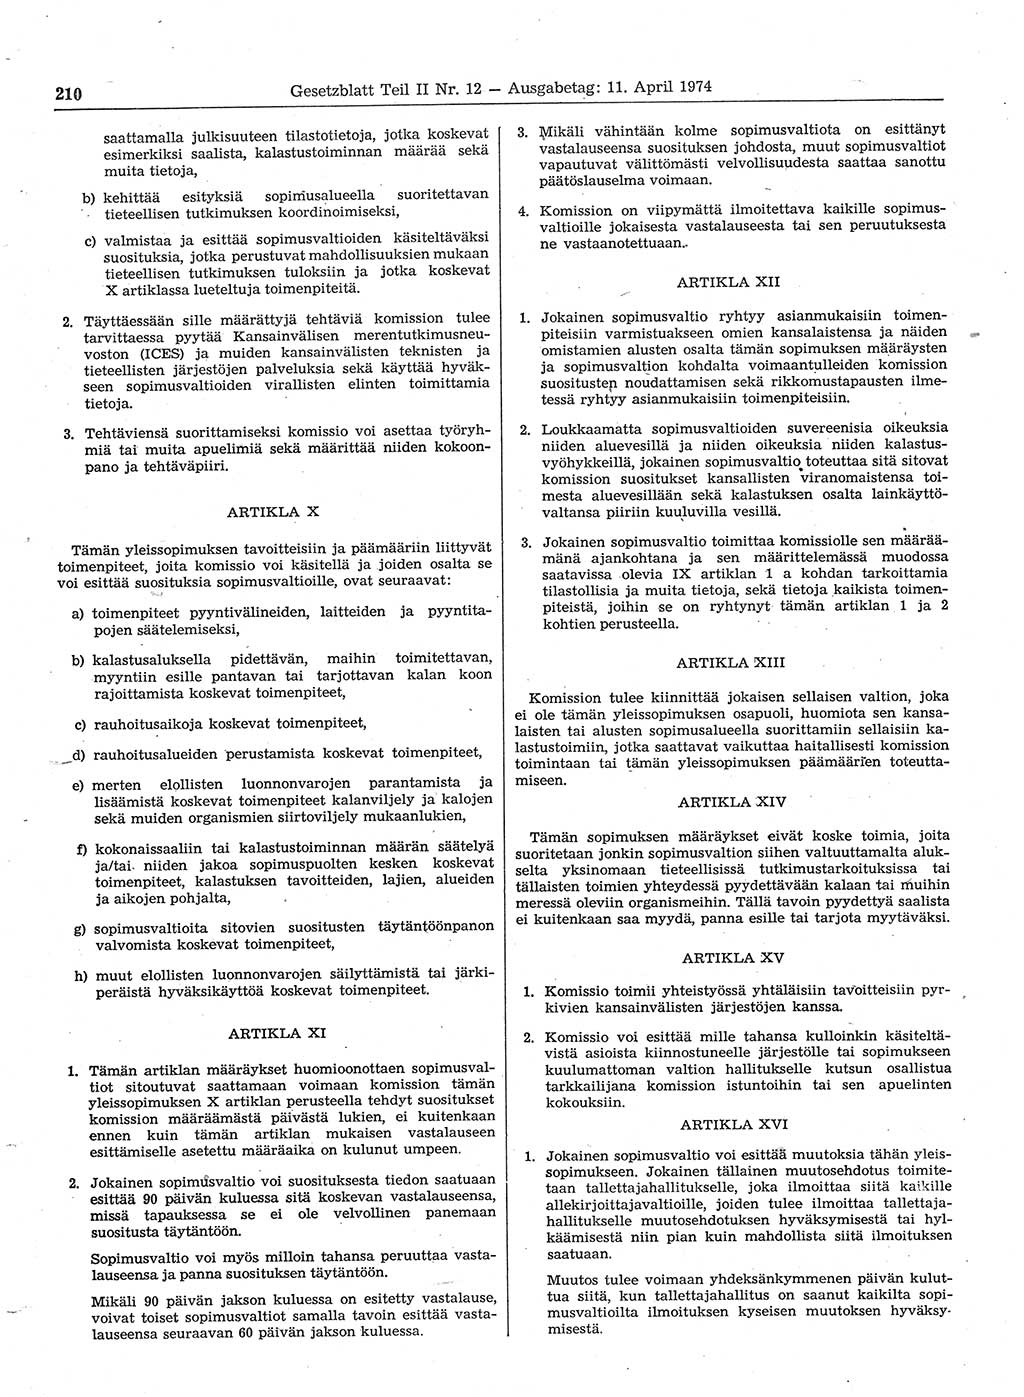 Gesetzblatt (GBl.) der Deutschen Demokratischen Republik (DDR) Teil ⅠⅠ 1974, Seite 210 (GBl. DDR ⅠⅠ 1974, S. 210)